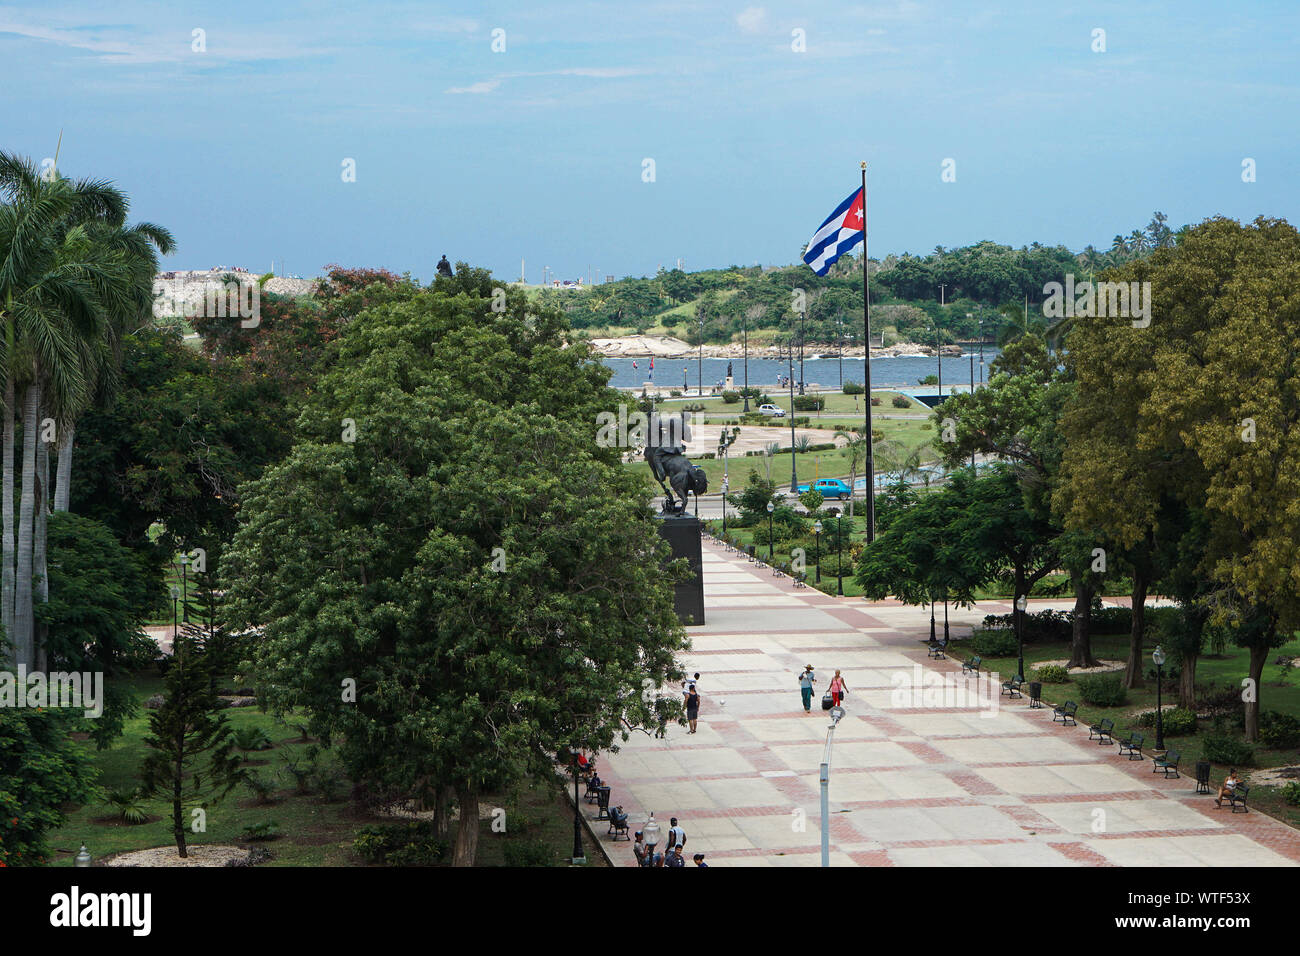 Bandiera cubana sul luogo pubblico Foto Stock